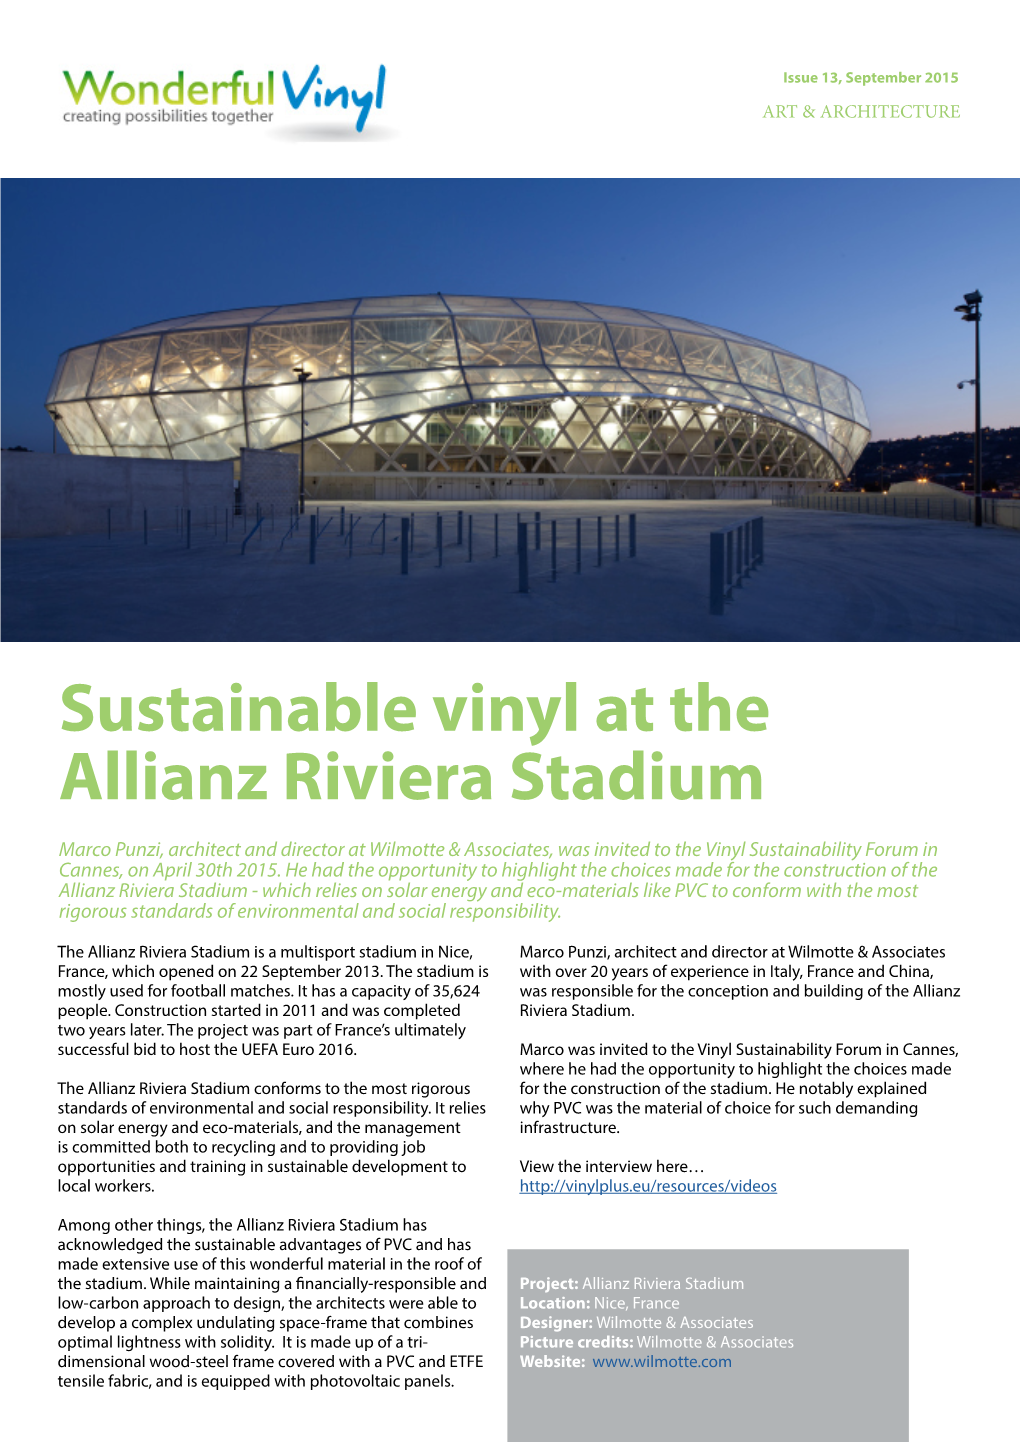 Sustainable Vinyl at the Allianz Riviera Stadium